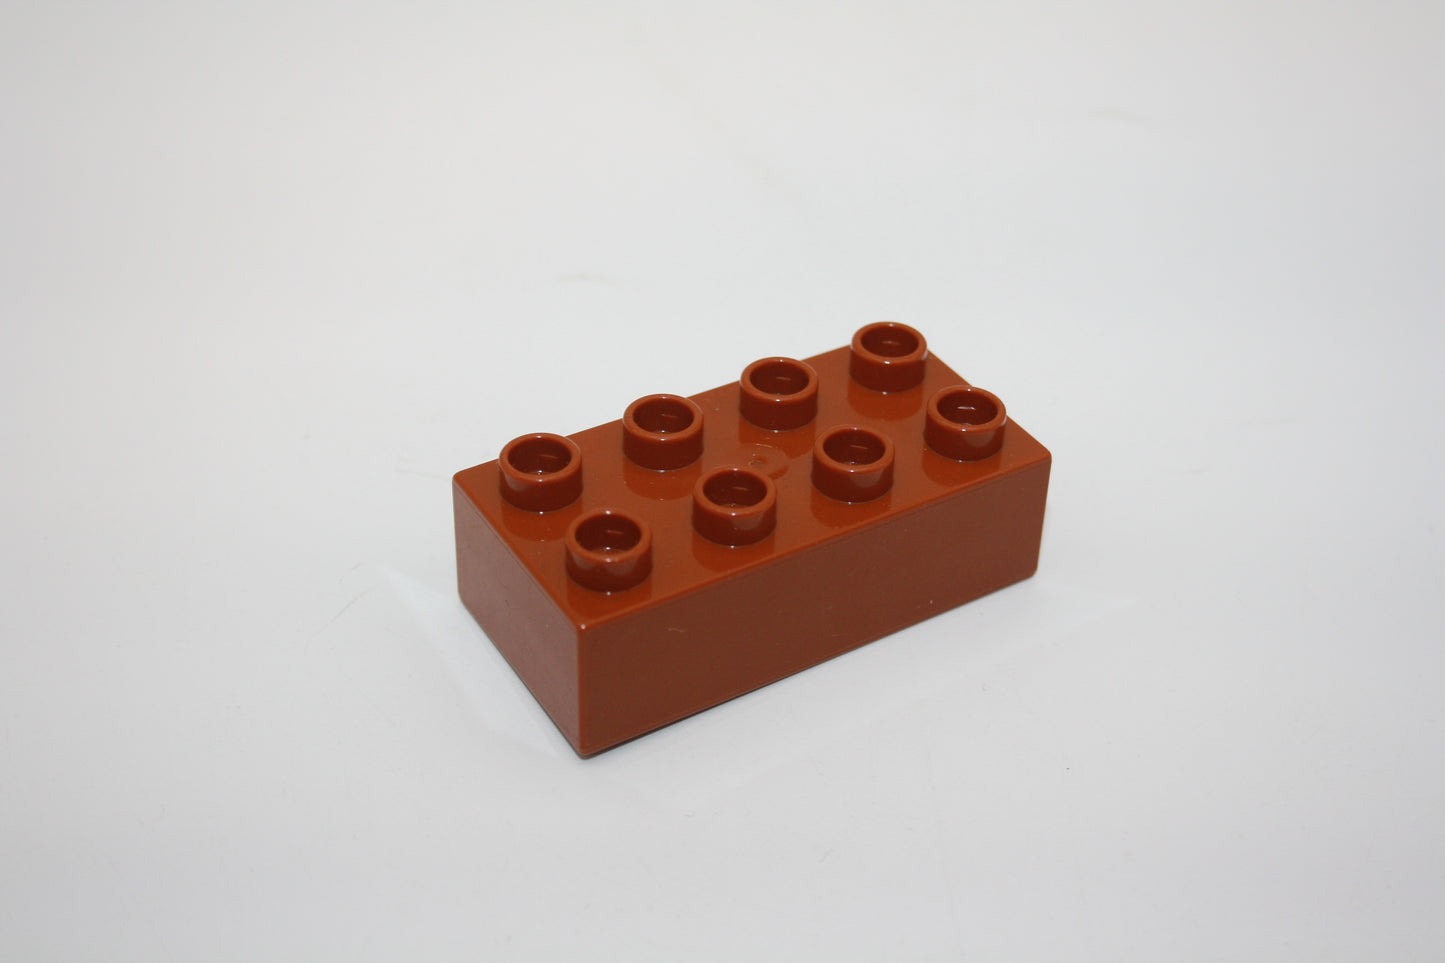 Duplo - 8er Steine (2x4 Noppen) - versch. Farben - Grundbausteine - einzelne Steine